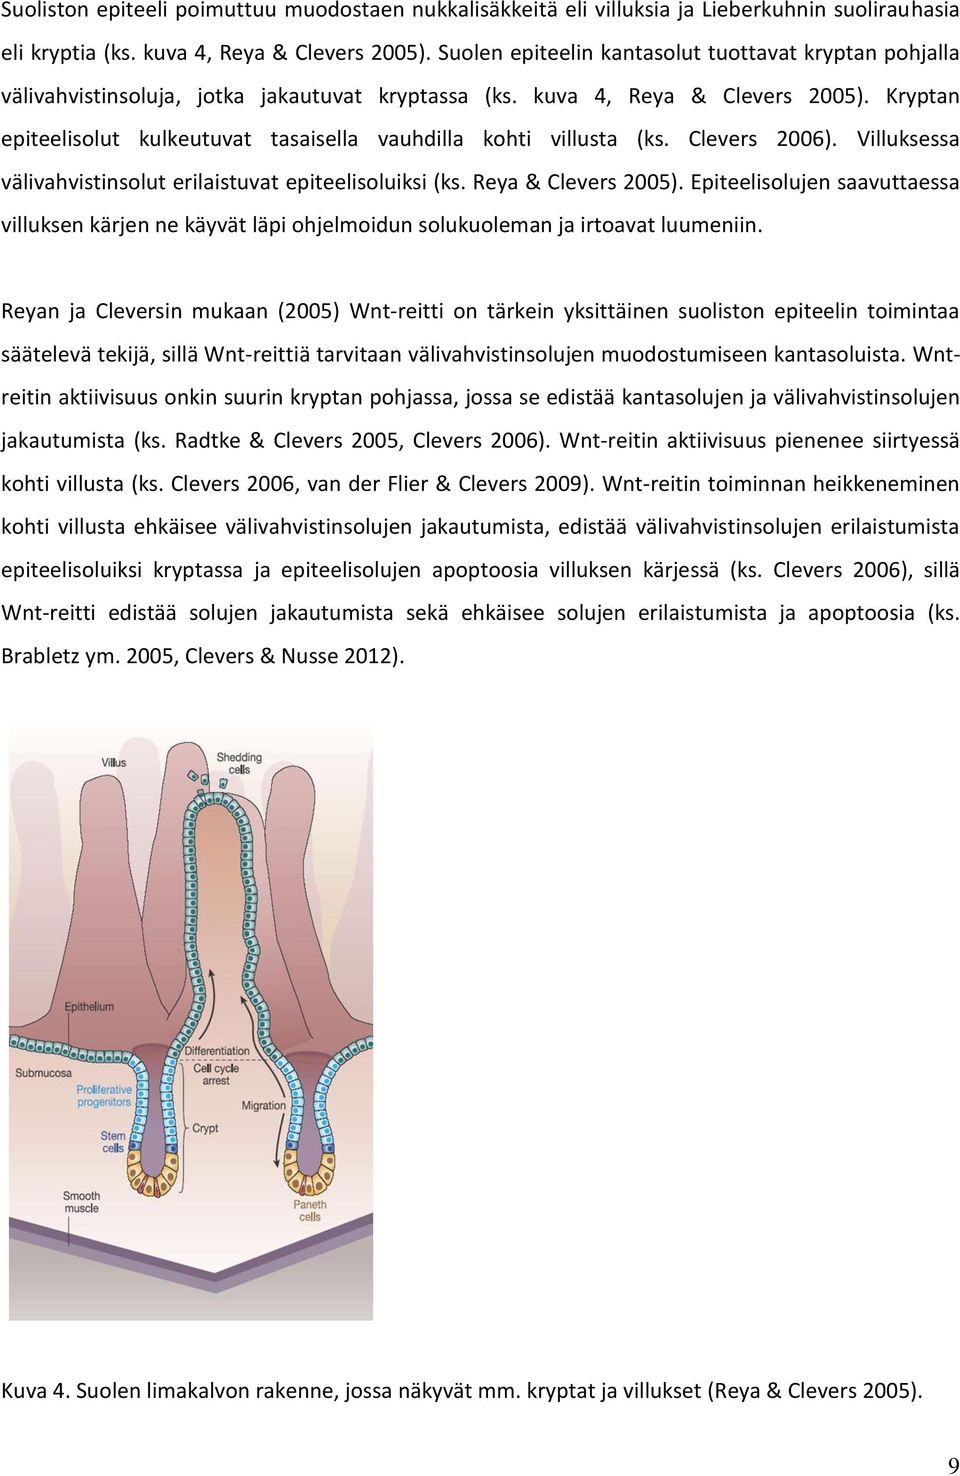 Kryptan epiteelisolut kulkeutuvat tasaisella vauhdilla kohti villusta (ks. Clevers 2006). Villuksessa välivahvistinsolut erilaistuvat epiteelisoluiksi (ks. Reya & Clevers 2005).